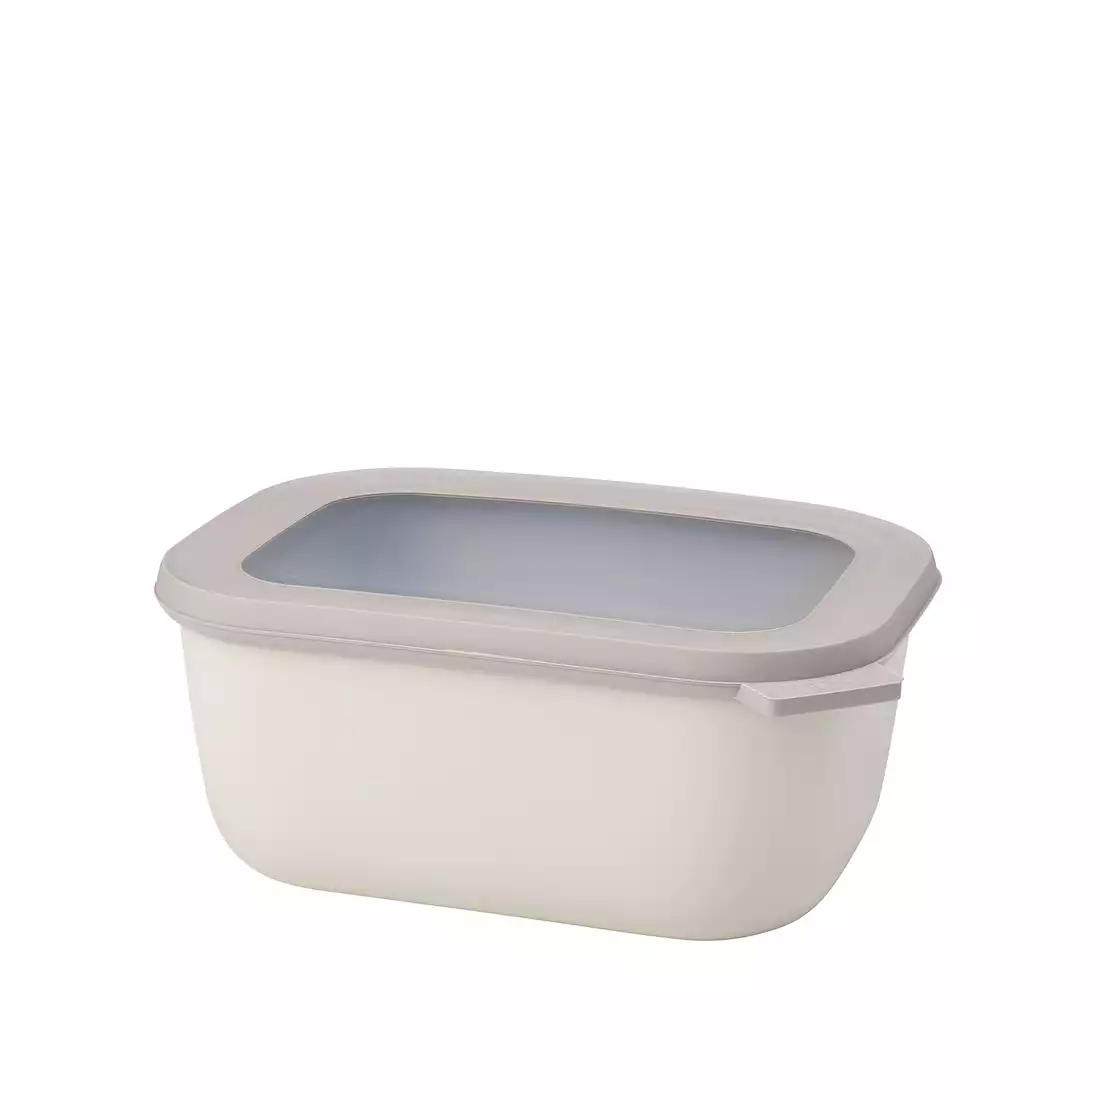 MEPAL CIRQULA rectangular bowl 1500 ml, nordic white